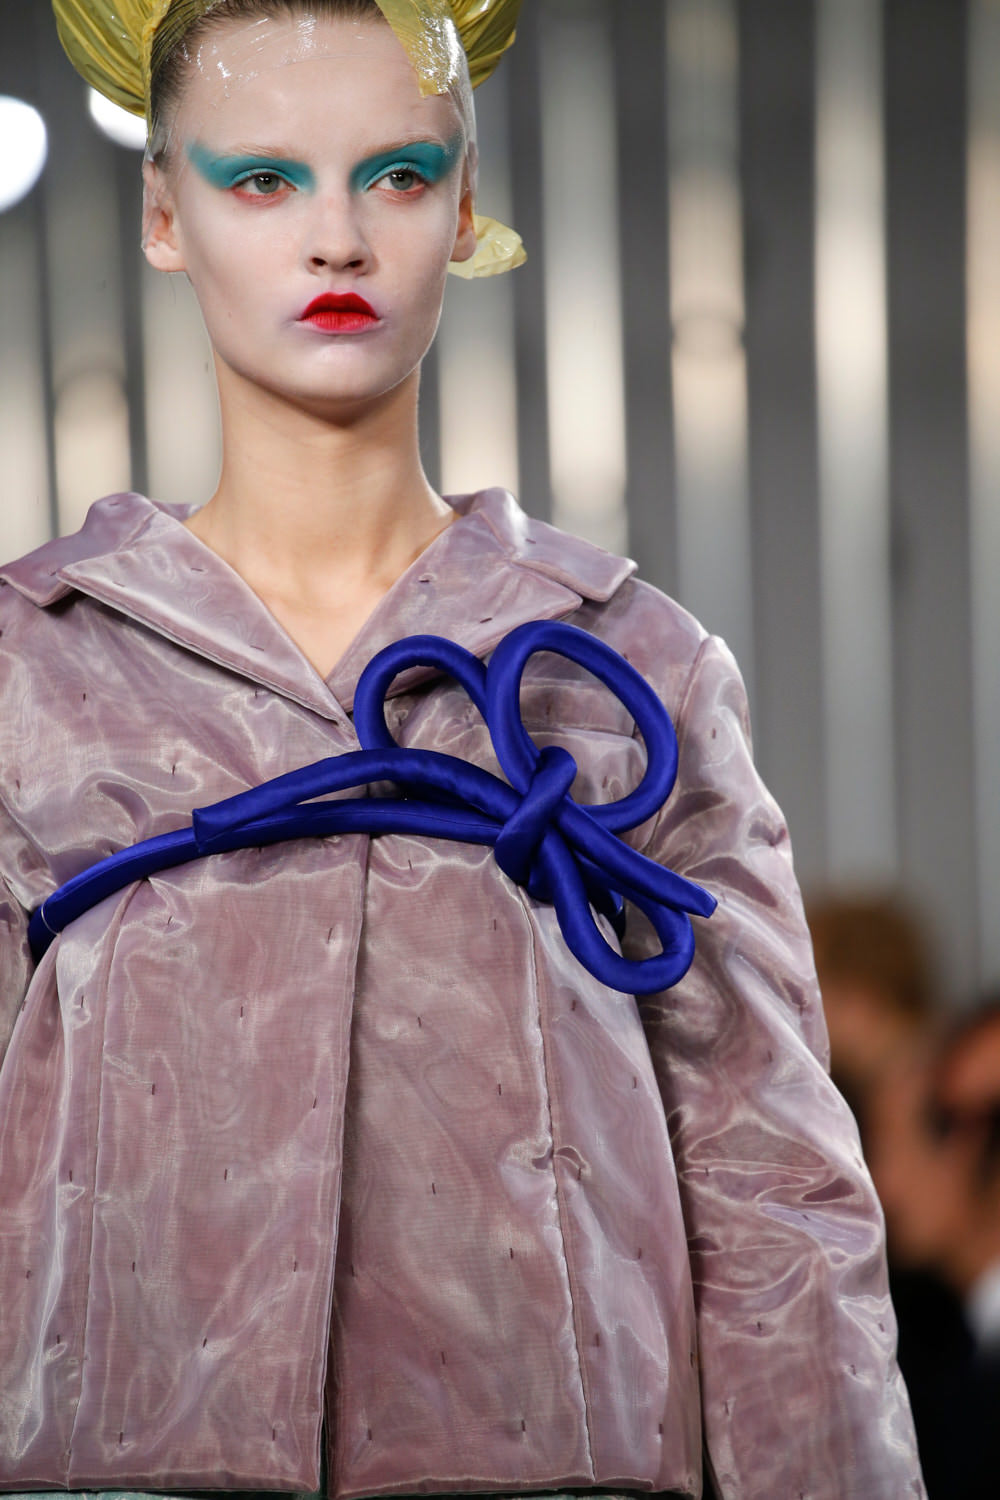 nito nito | Japonism in fashion